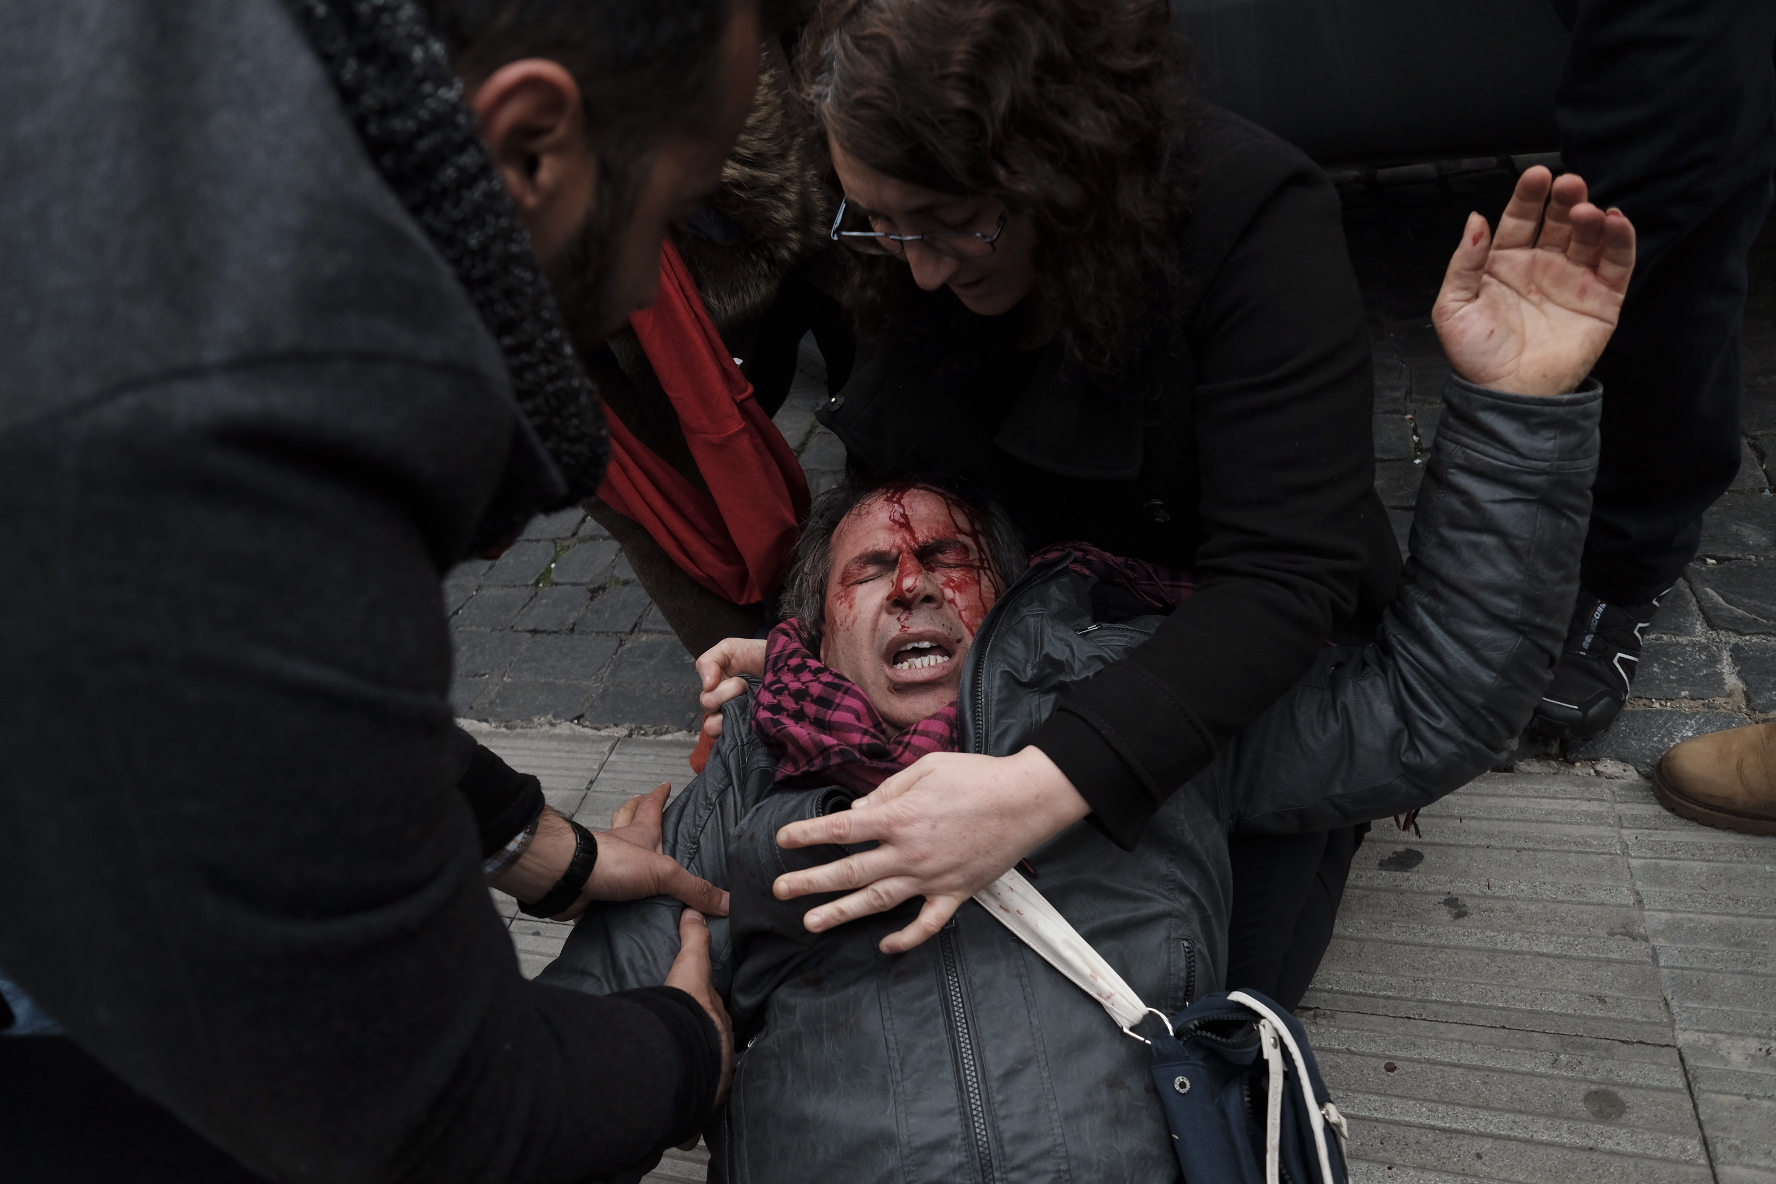 اشتباكات وإصابات فى روما احتجاجا على زيارة أردوغان إلى إيطاليا